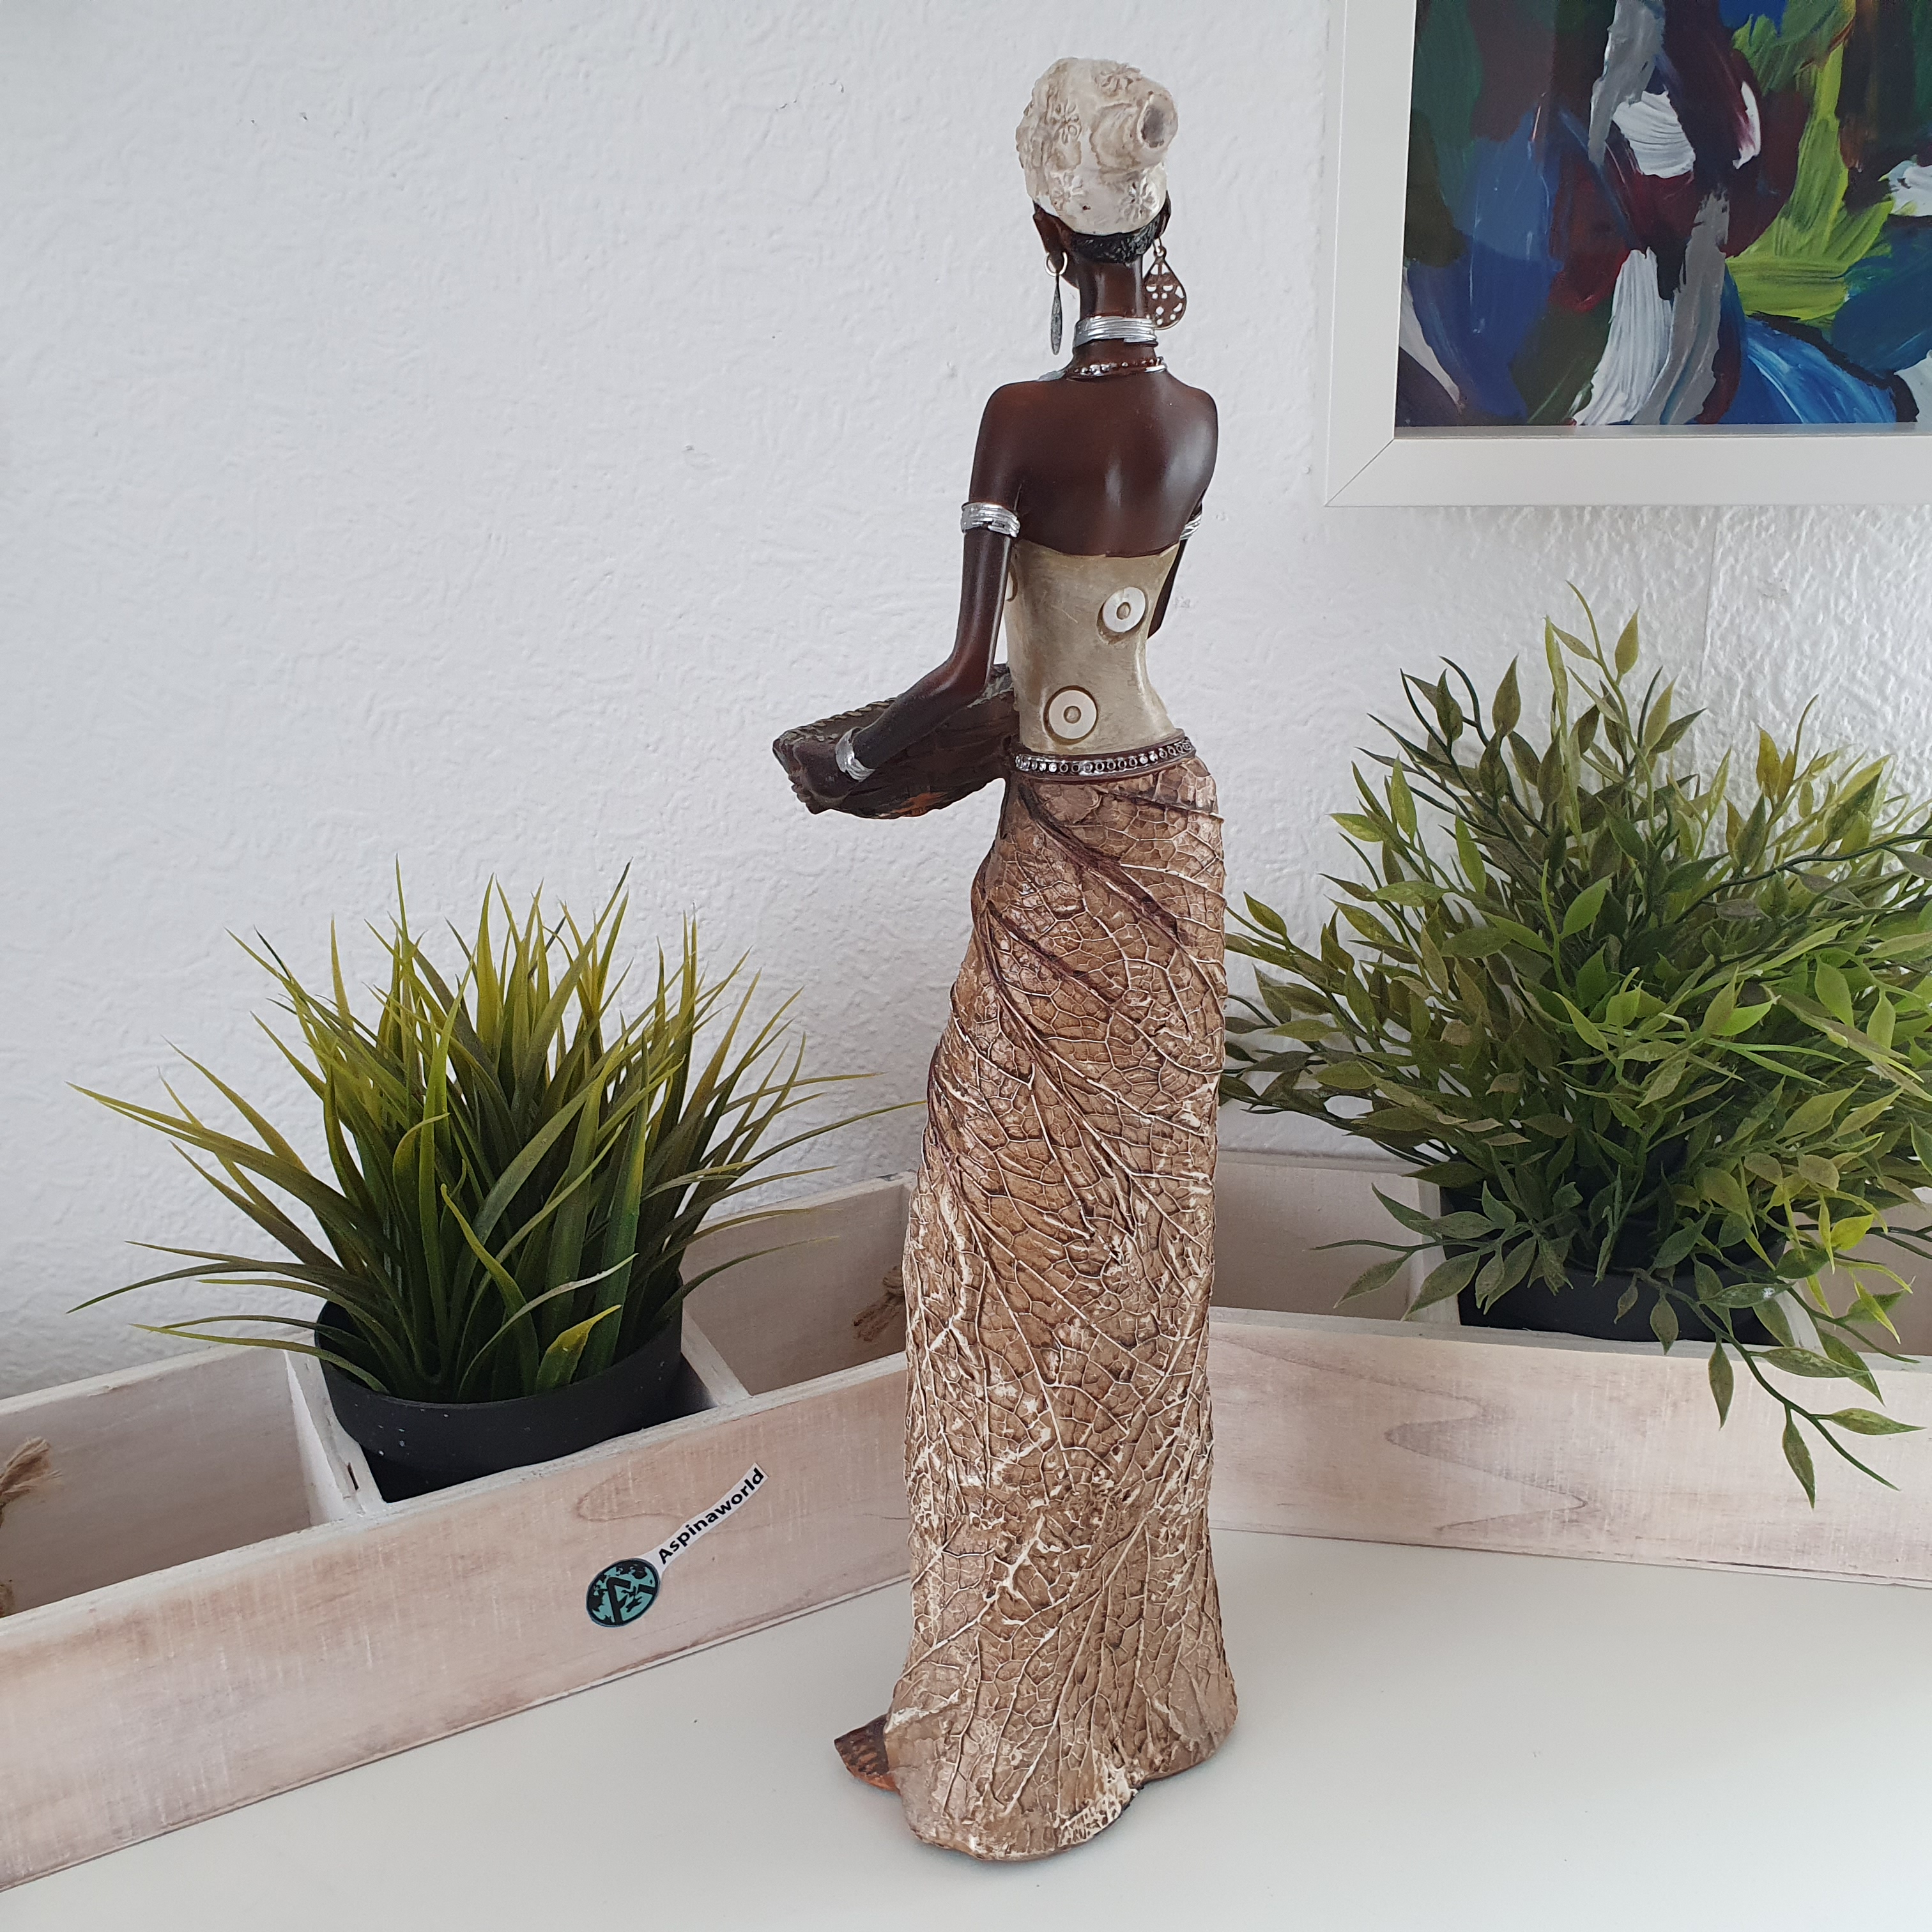 Afrikadeko Frau Schale und Braunem Kleid als Dekofigur von hinten